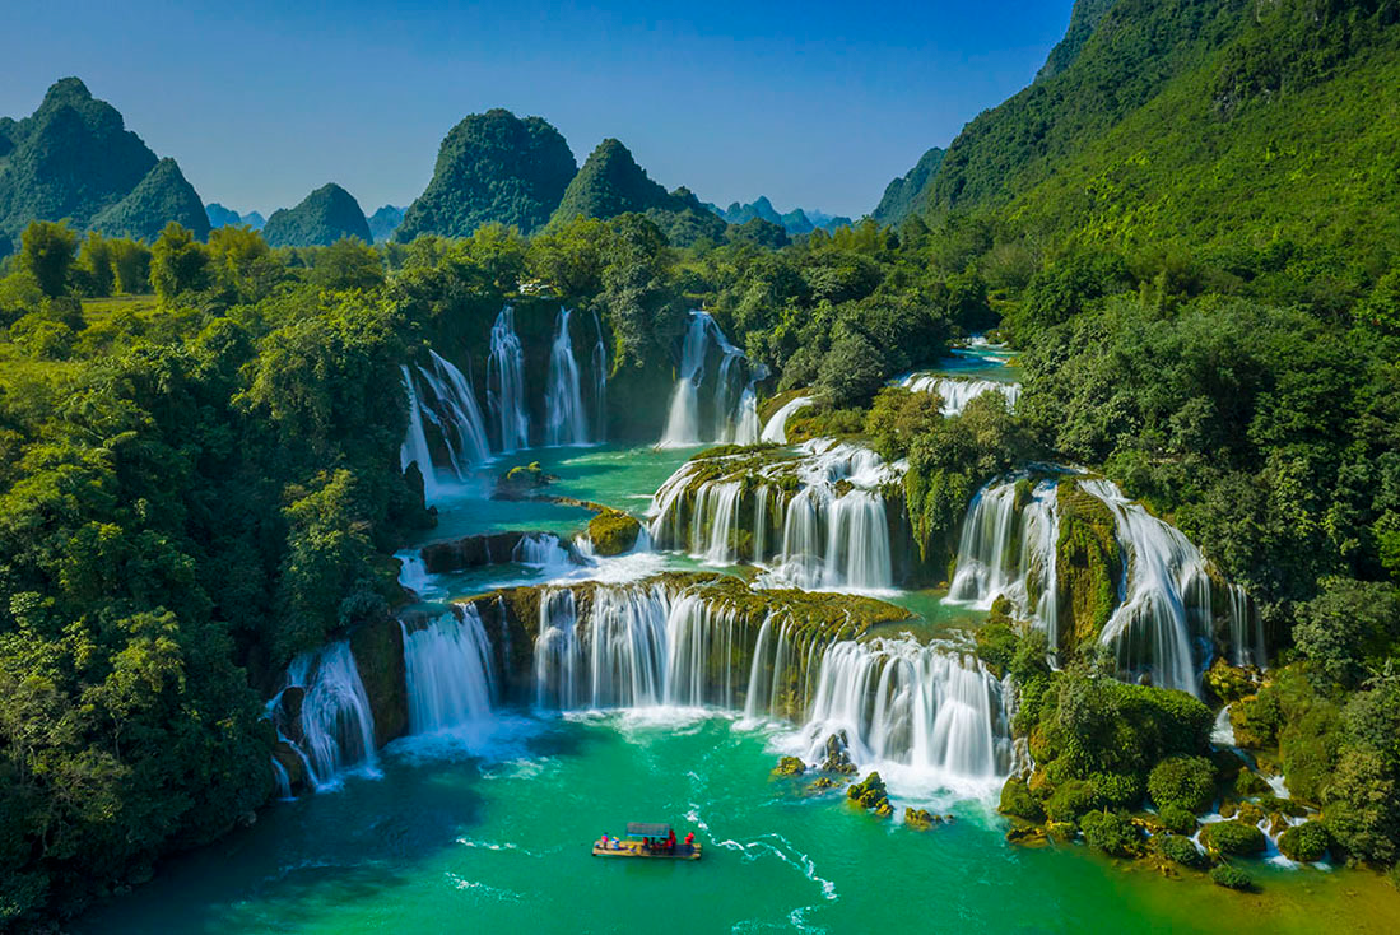 Thác Bản Giốc lọt vào bảng xếp hạng những thác nước đẹp nhất thế giới